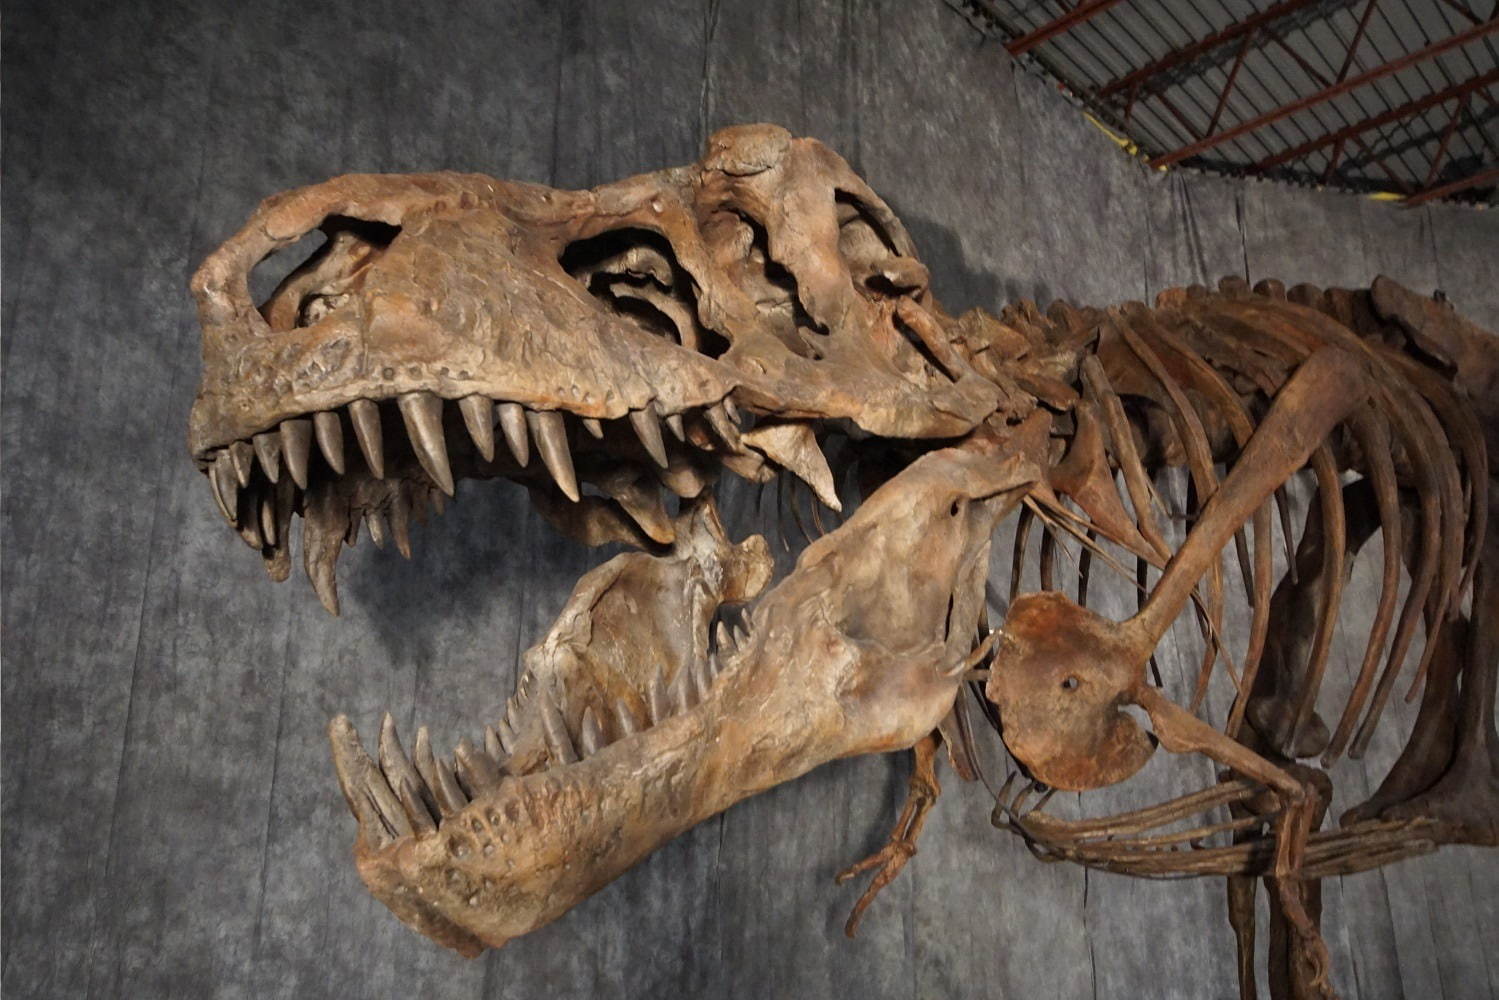 国立科学博物館「恐竜博2019」 “謎の恐竜”デイノケイルス全貌初公開 